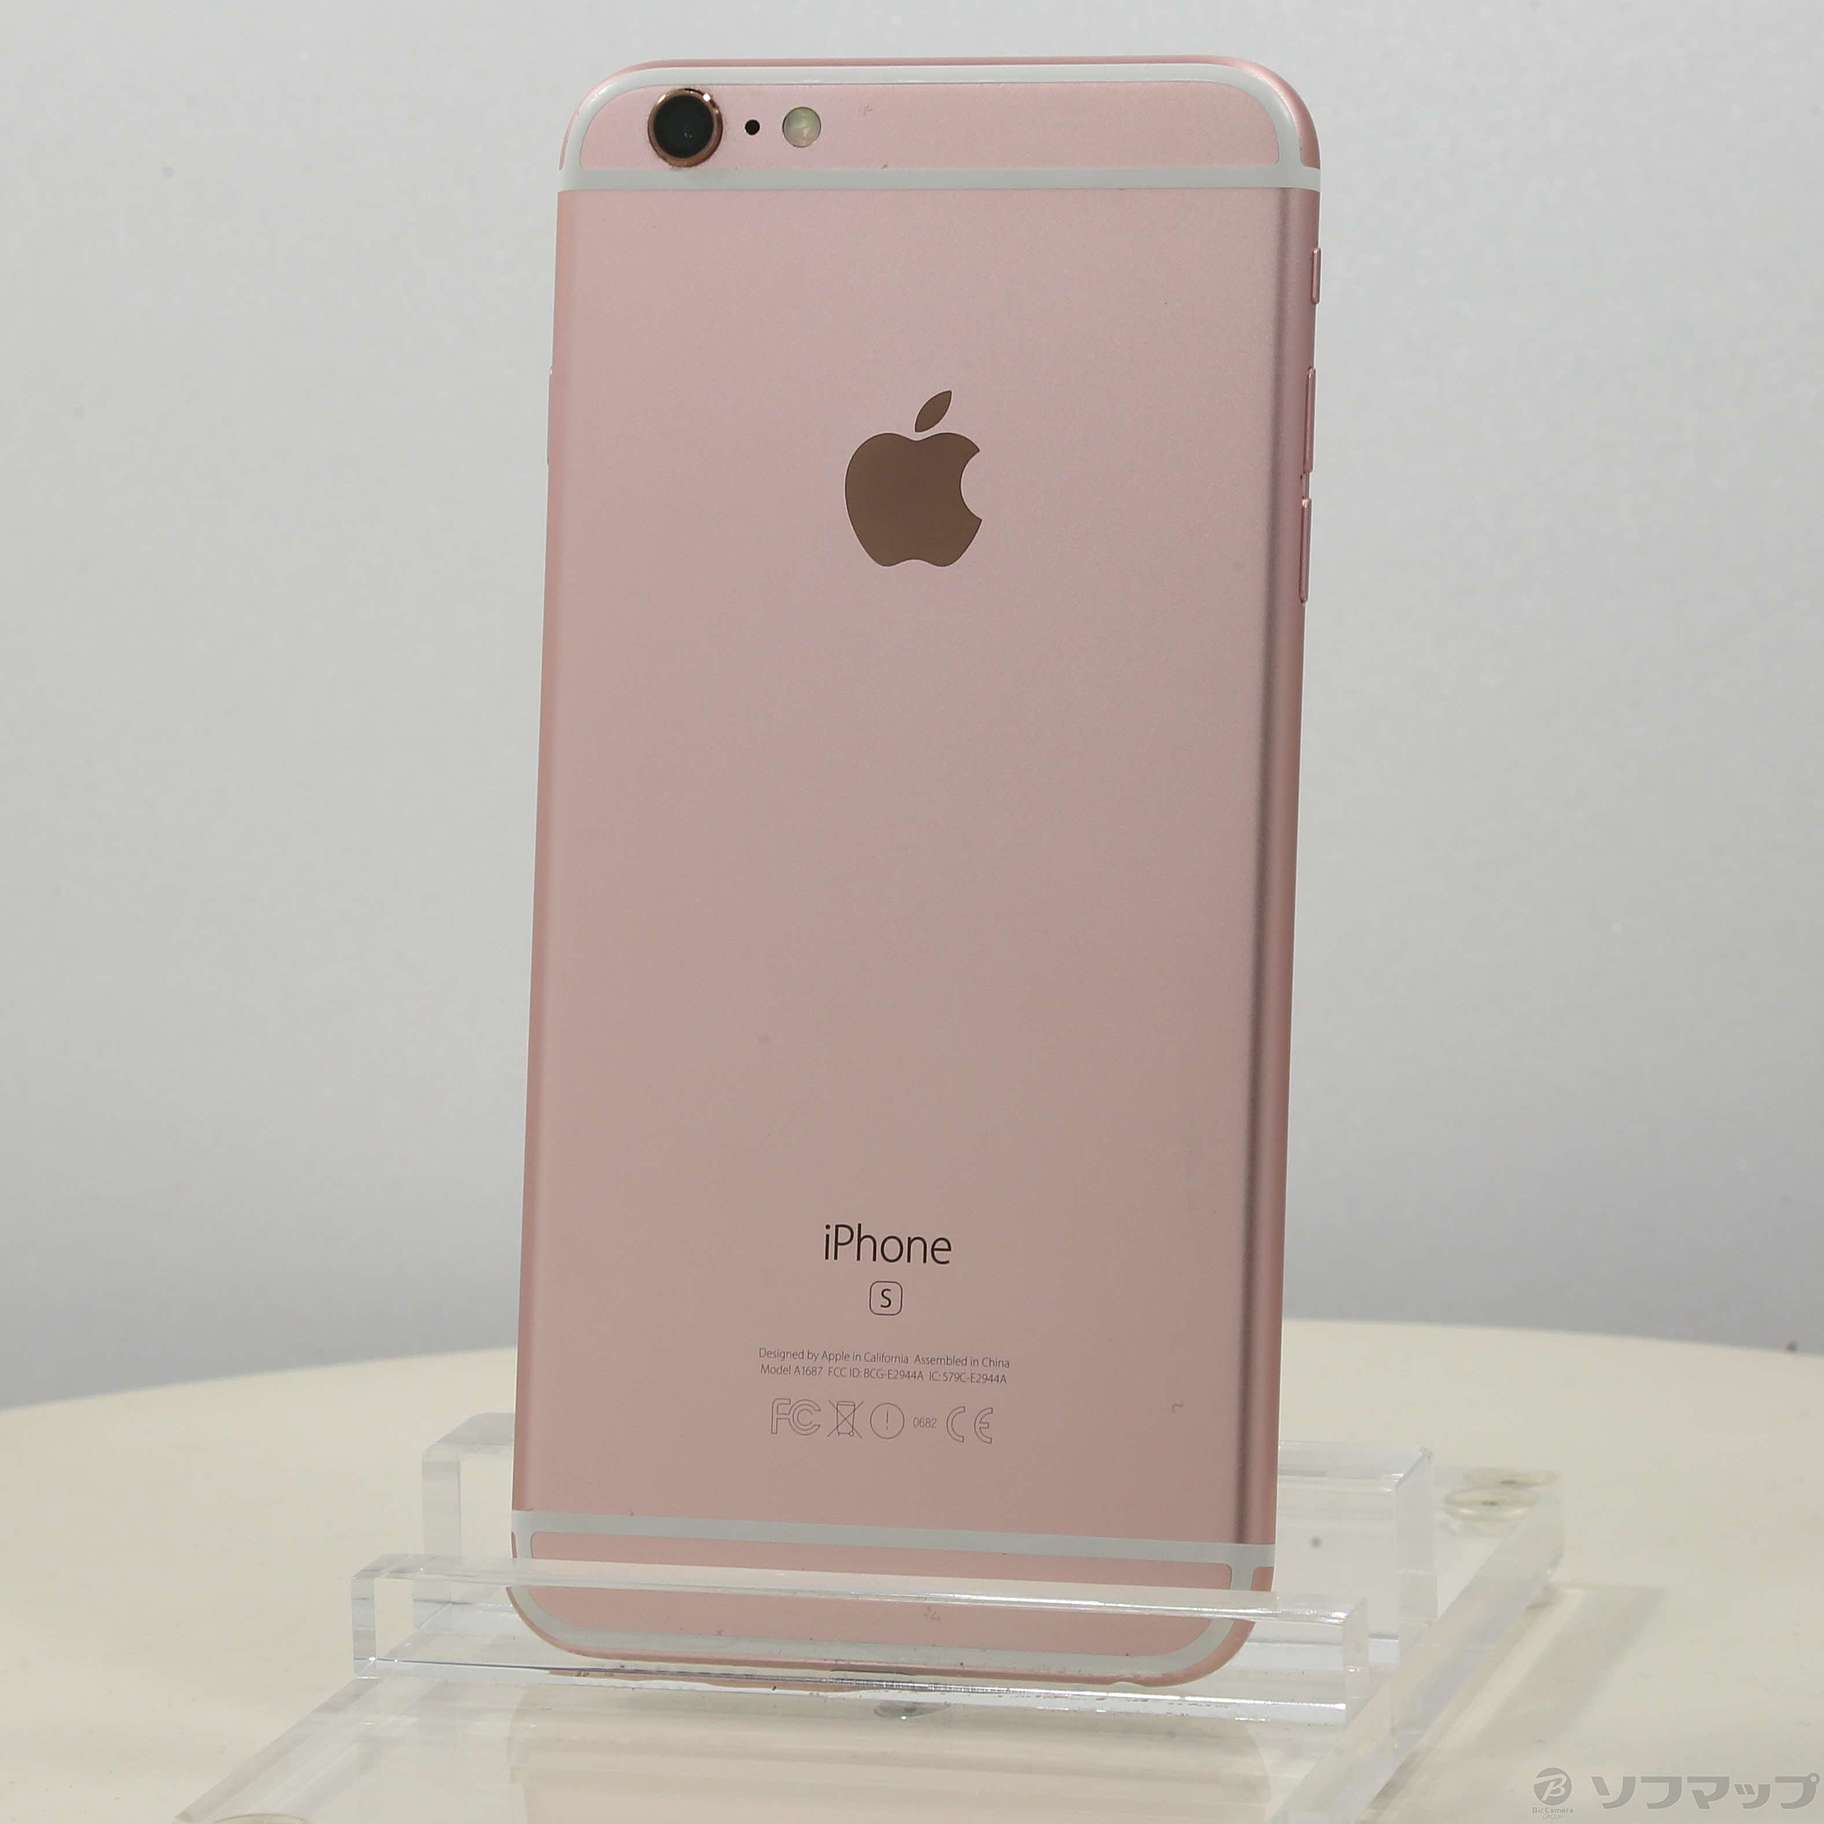 【新品未使用】iPhone 6s 32GB Rose Gold SIMフリー